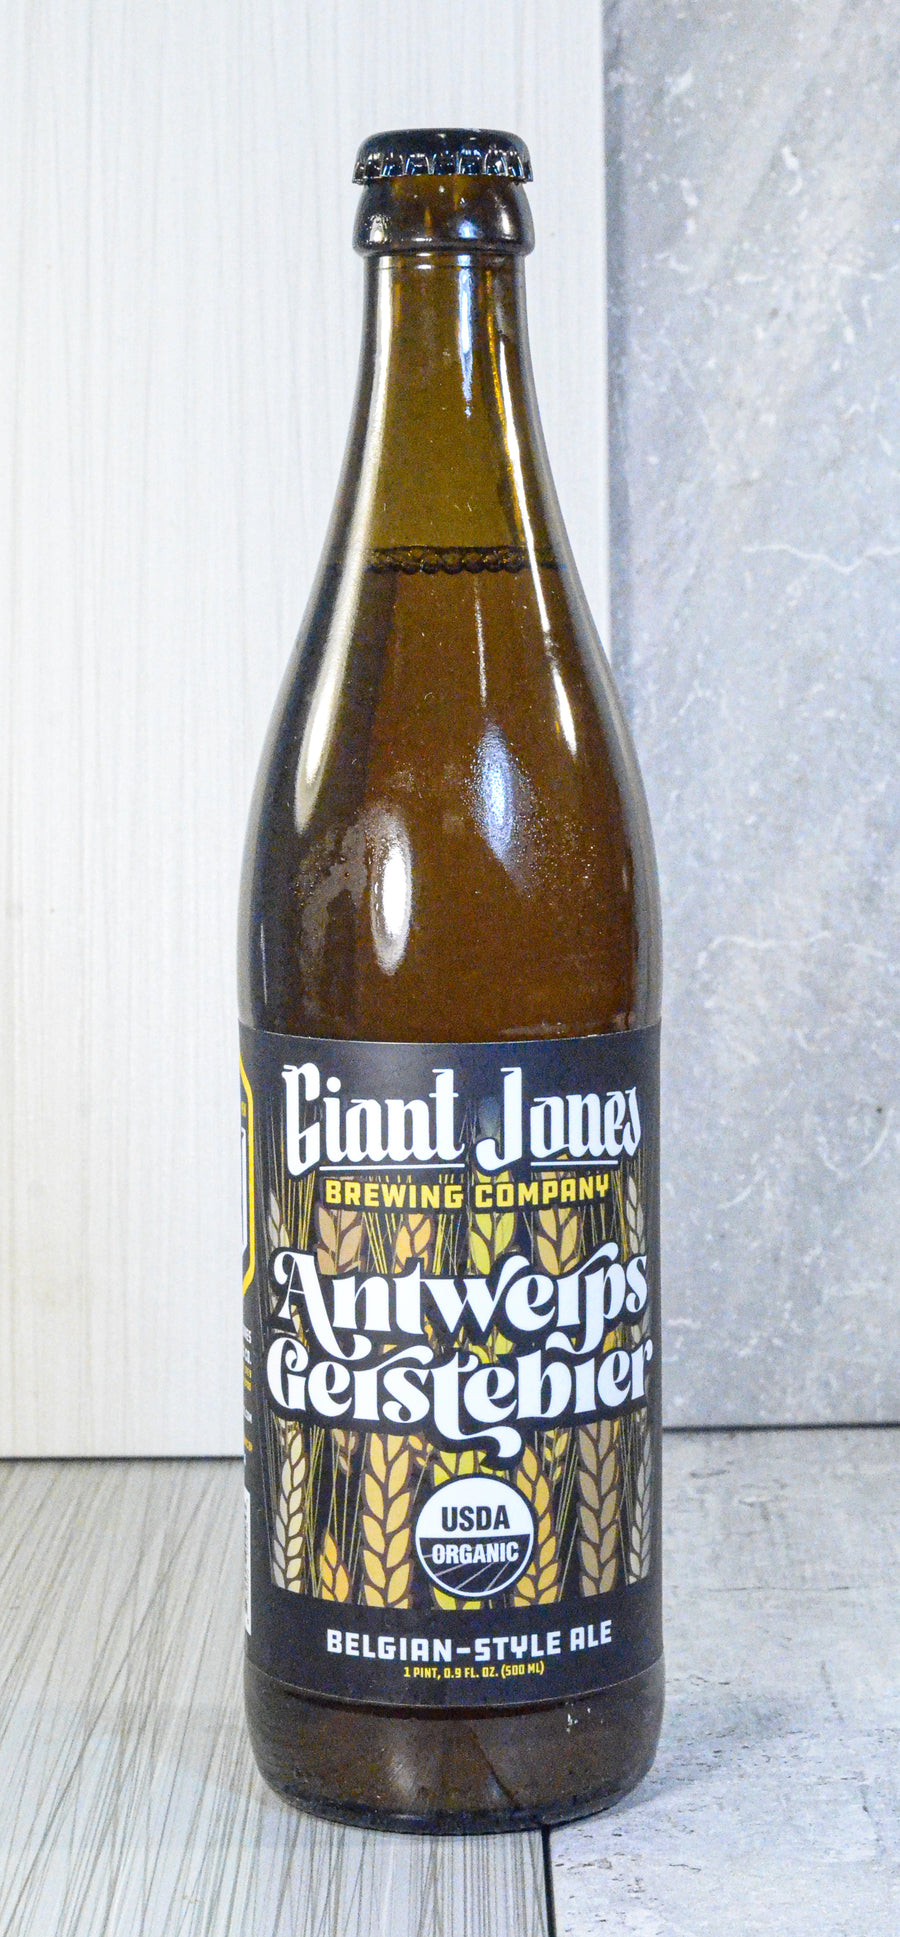 Giant Jones Brewing, Antwerps Gerstbier